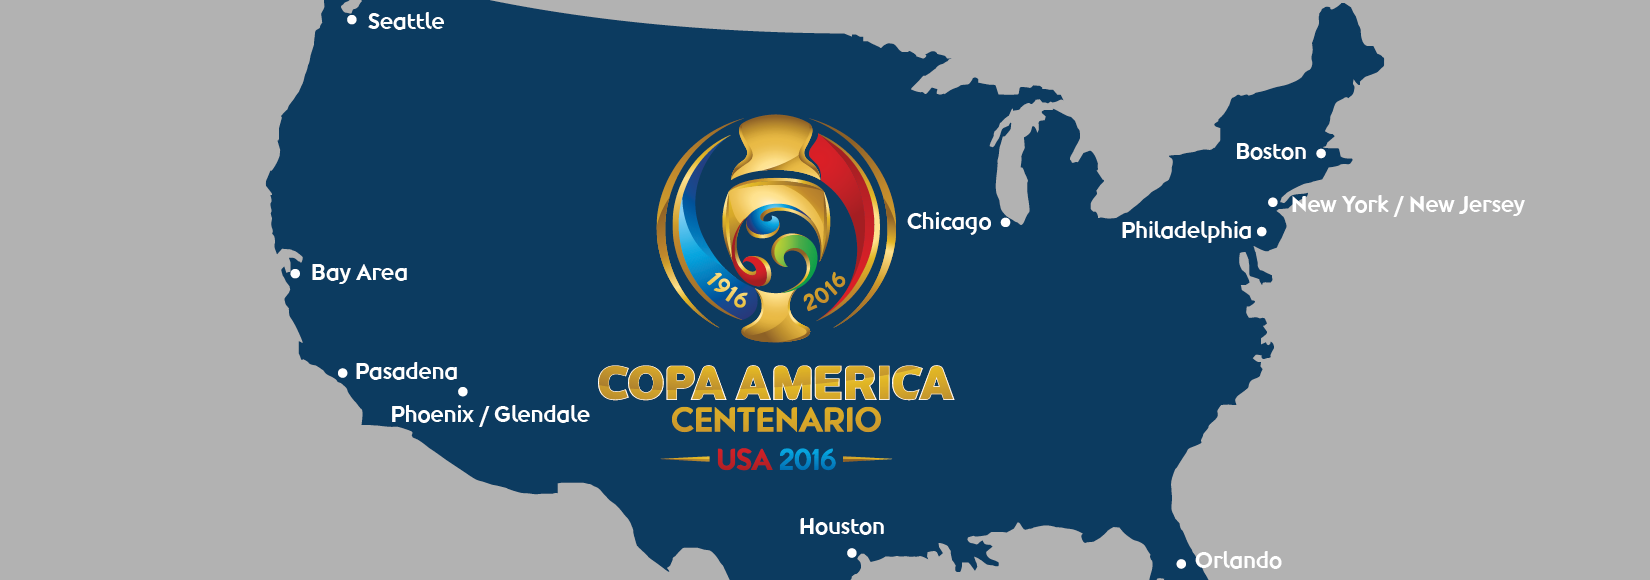 Las 10 sedes de la Copa América Centenario 2016